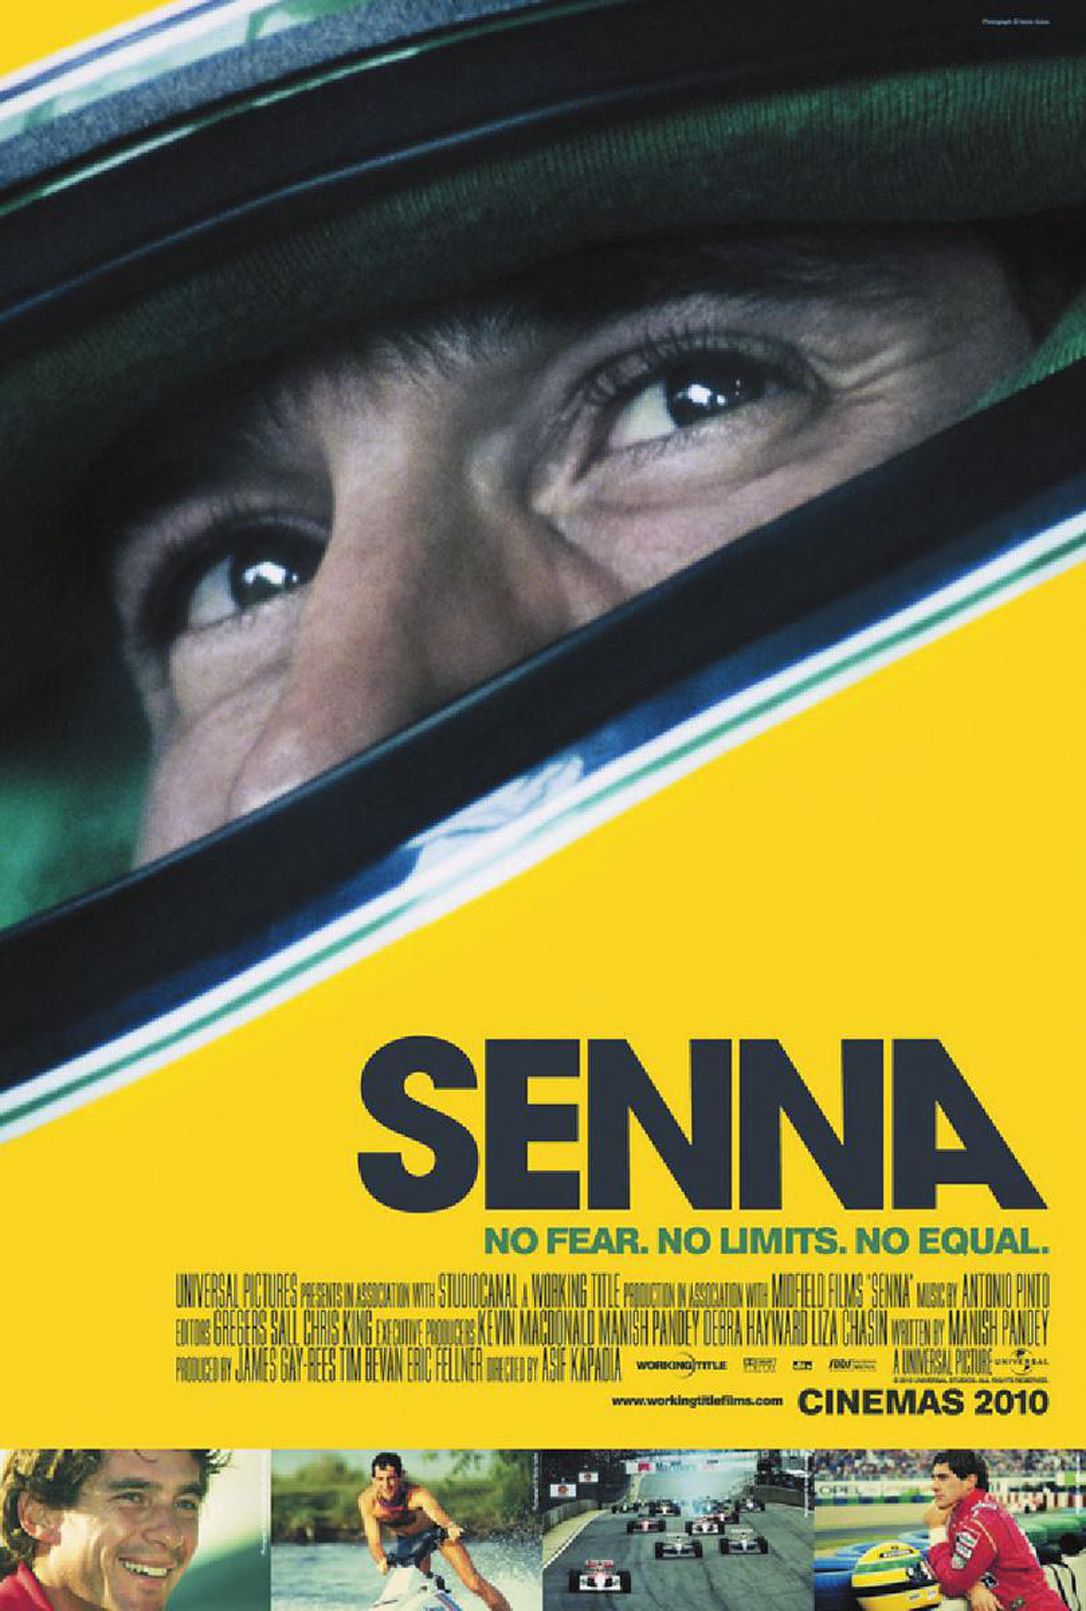 Autophile: Ayrton Senna was the racing pride of Brazil - WellandTribune.ca